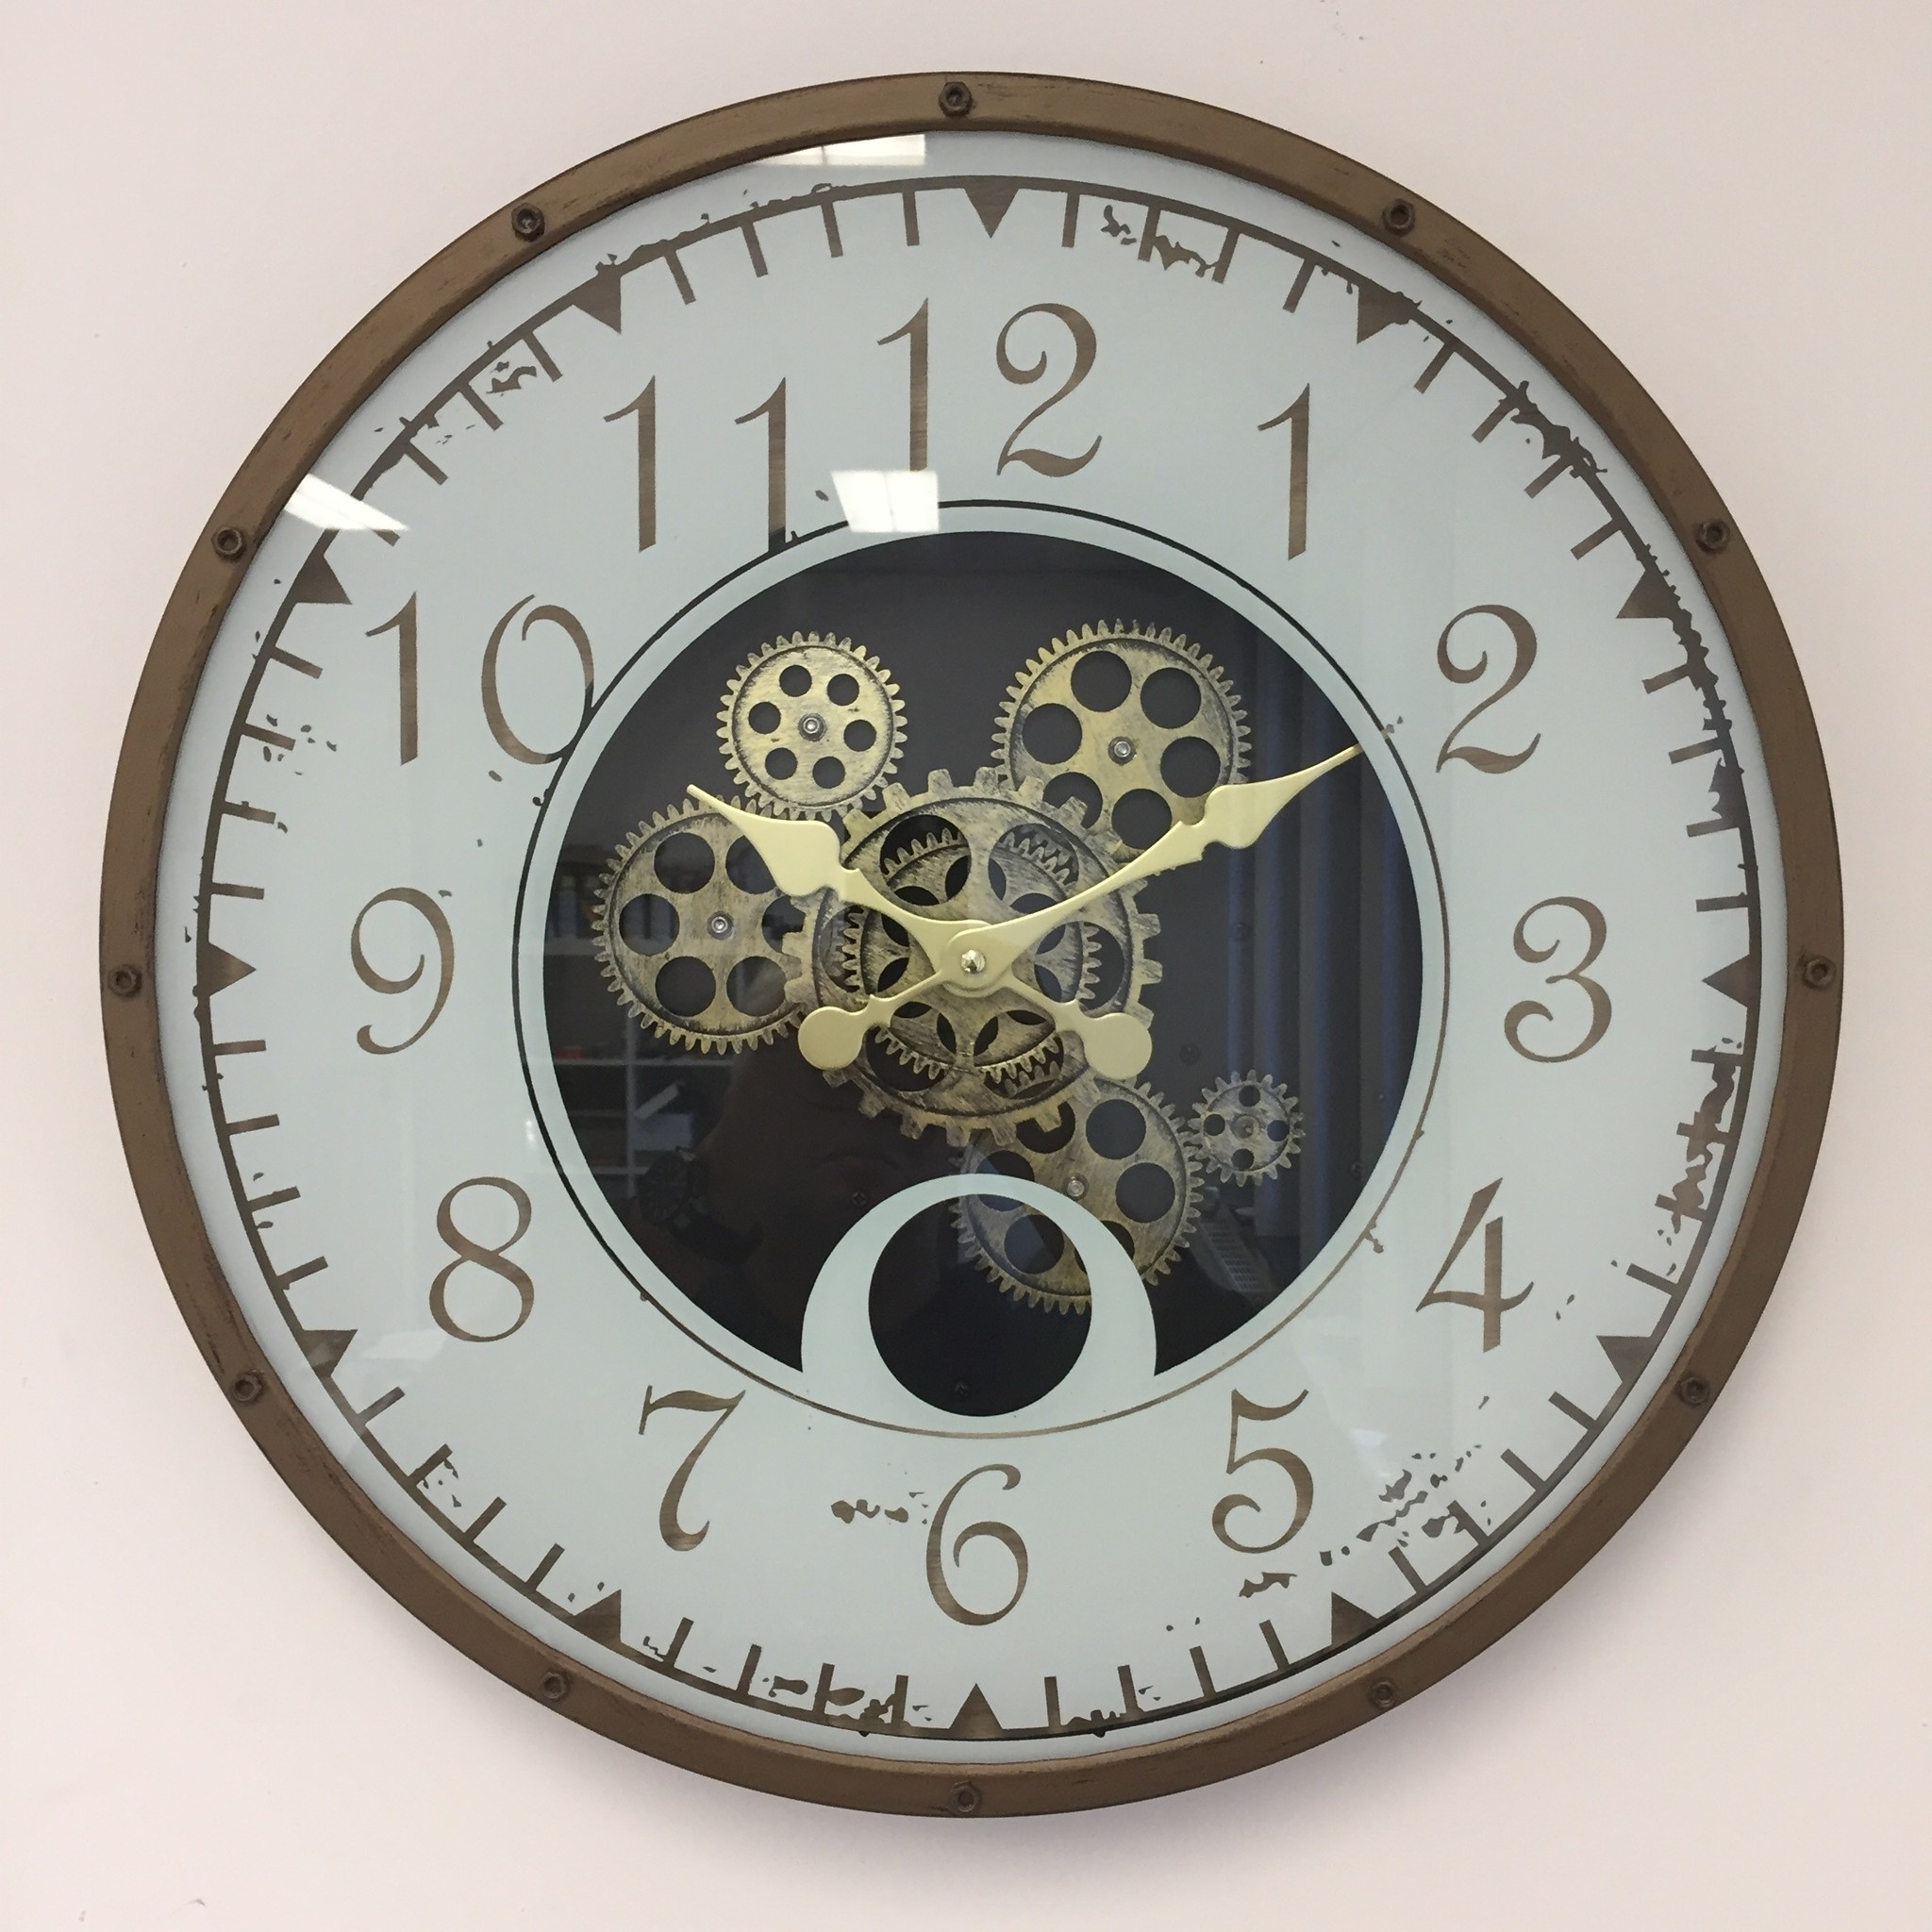 NiceTime Design - Wall clock Metal Gear Industrial Design Bronze